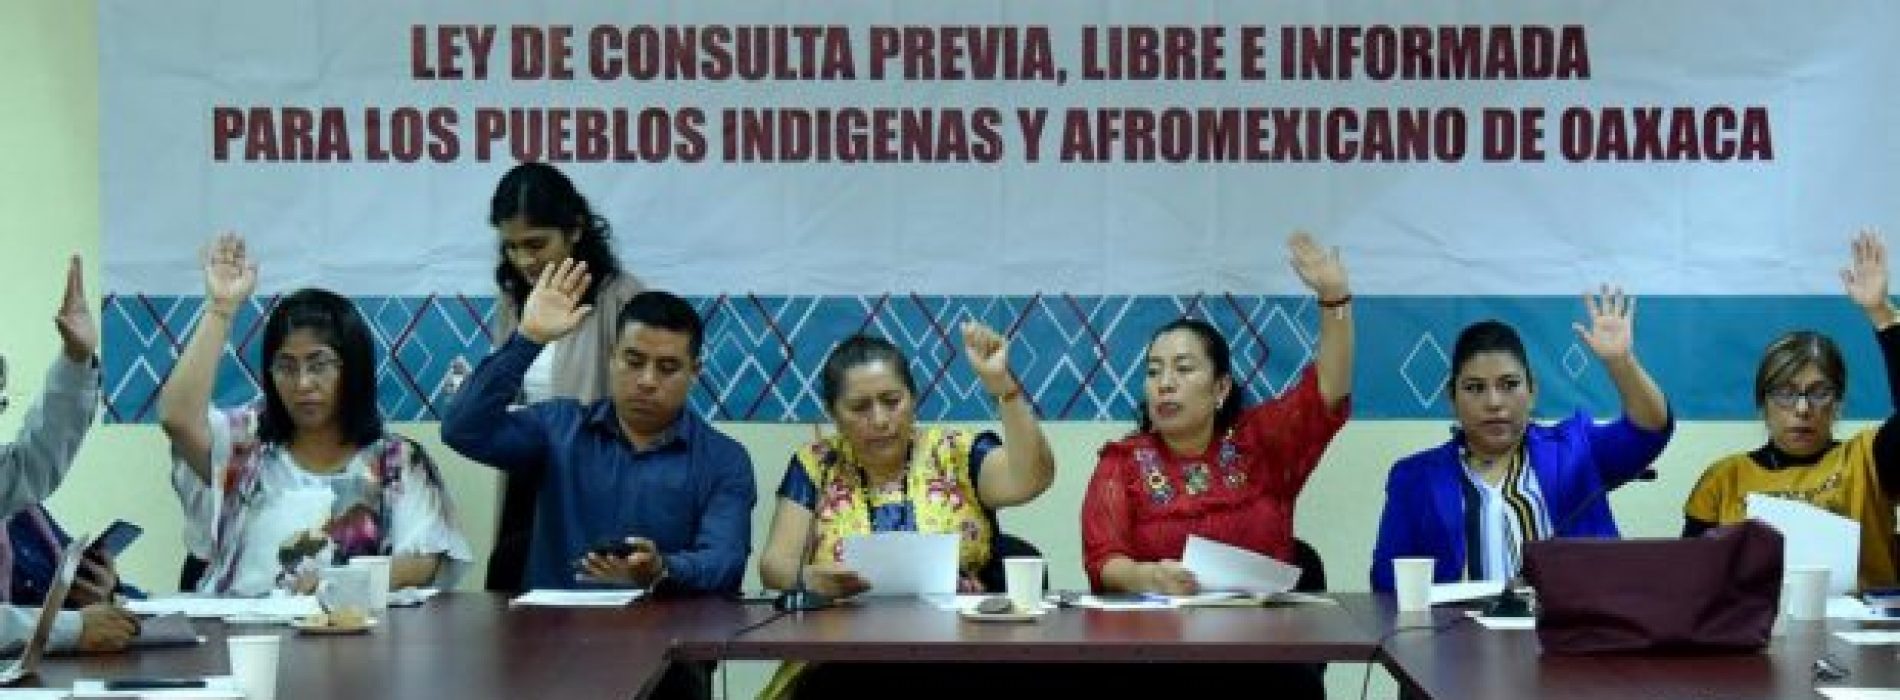 Avalan Congreso de Oaxaca invitación para foros sobre Ley de Consulta previa, libre e informada